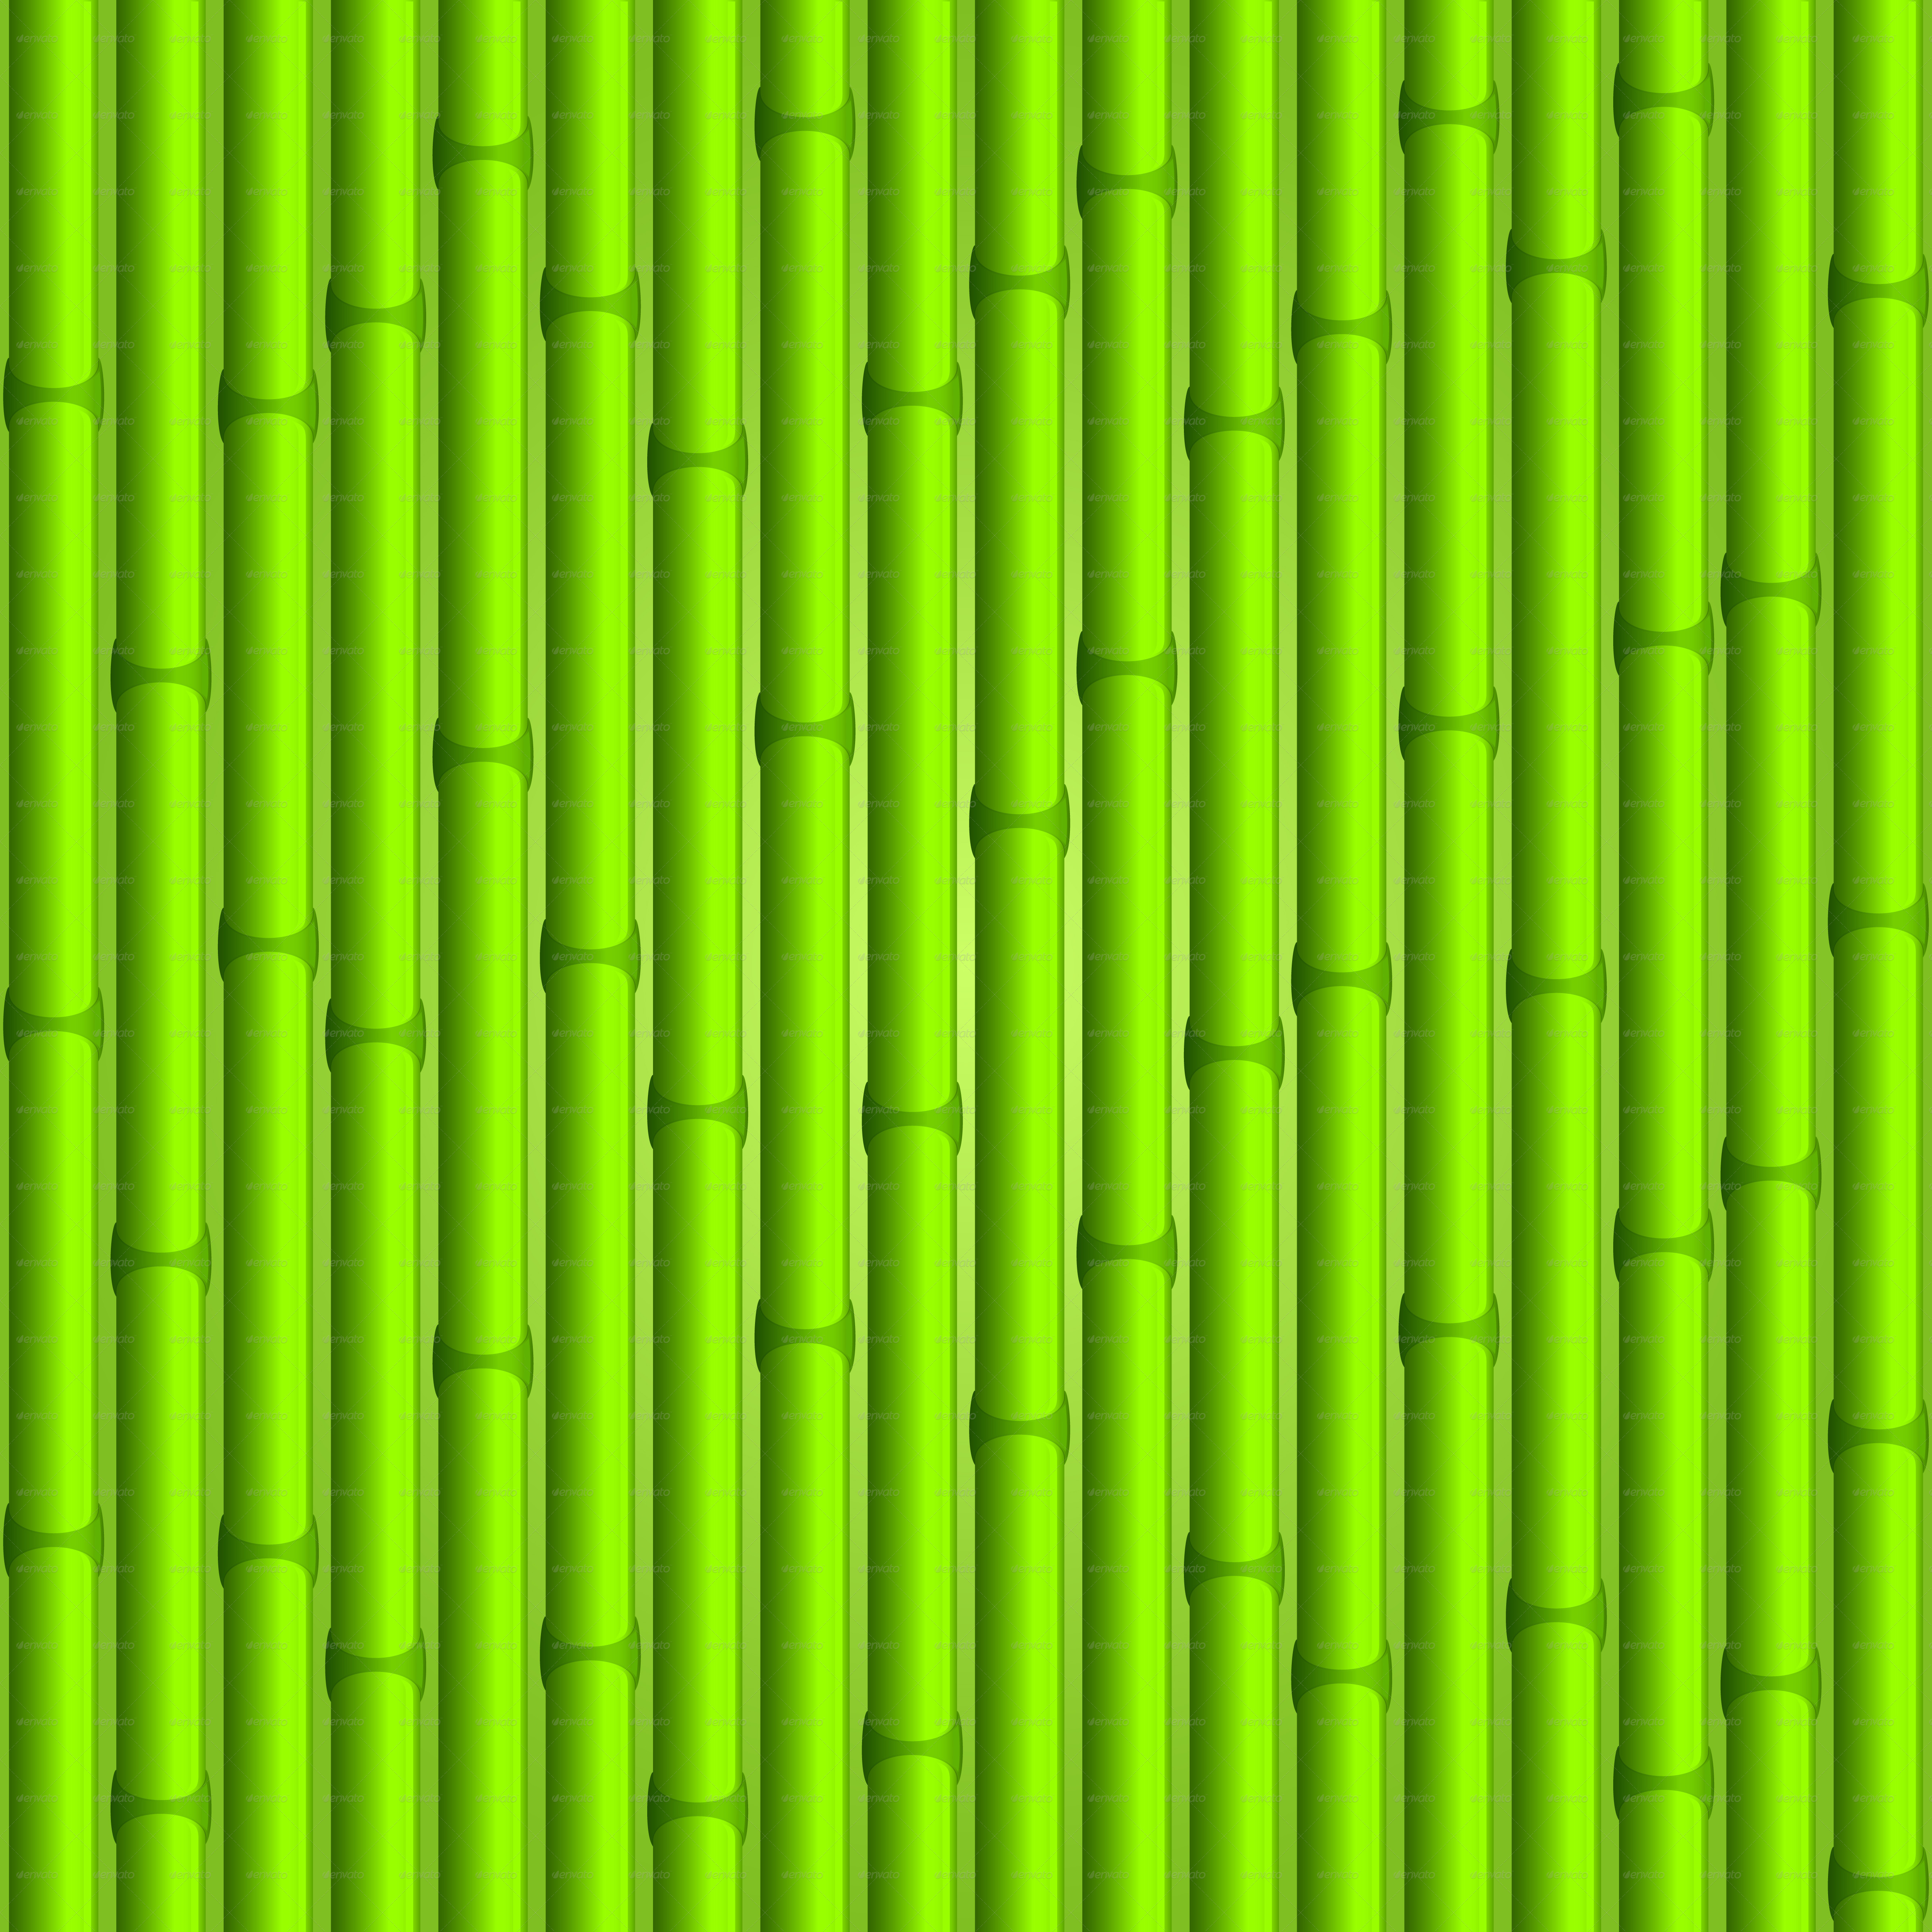 Bamboo Textured